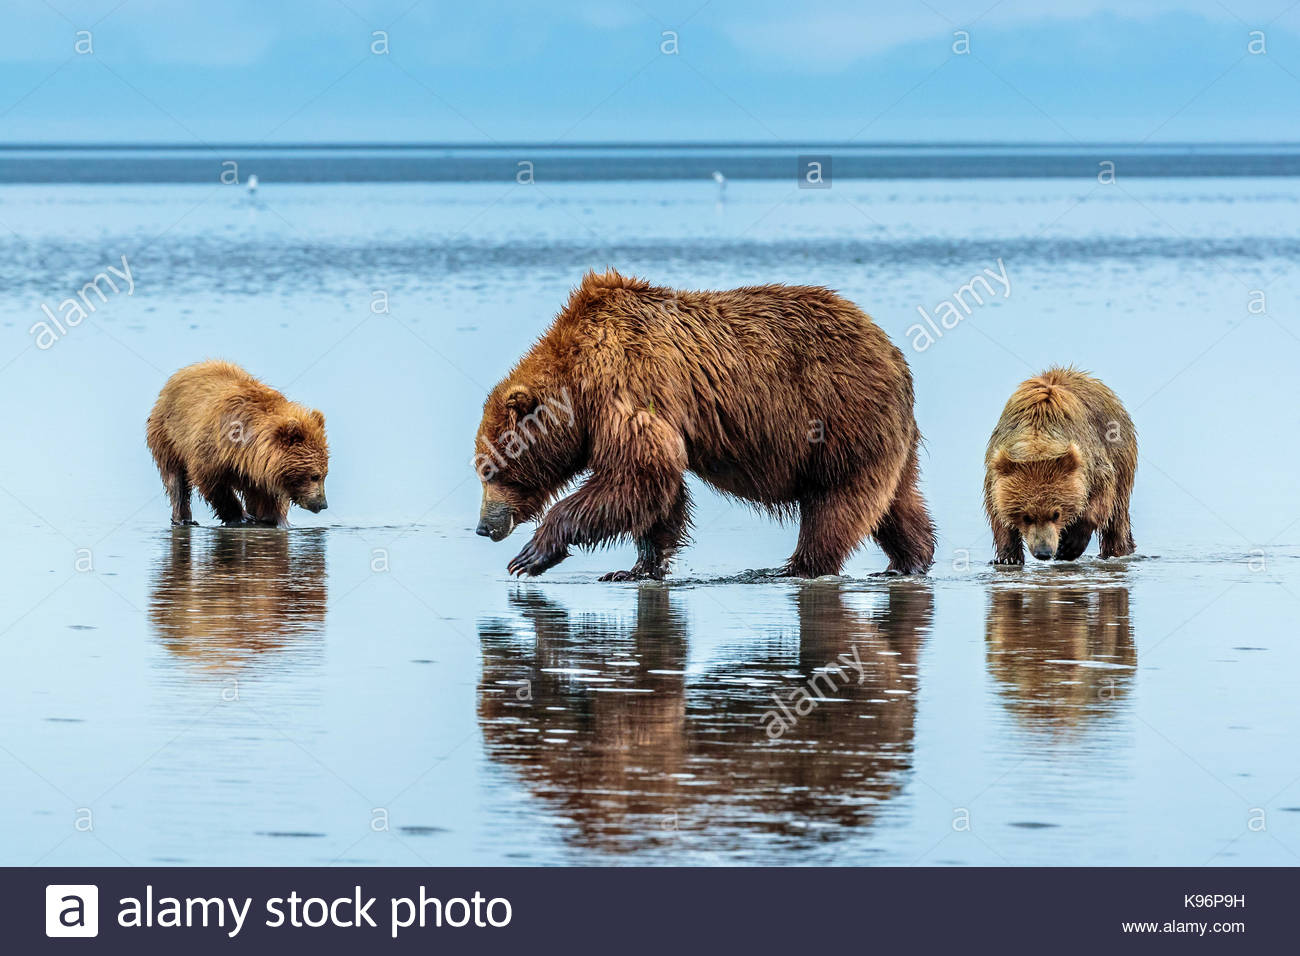 L'ours brun côtières, Ursus arctos, creuser et les palourdes à Sliver Salmon Creek dans la région de Lake Clark National Park, Alaska. Banque D'Images